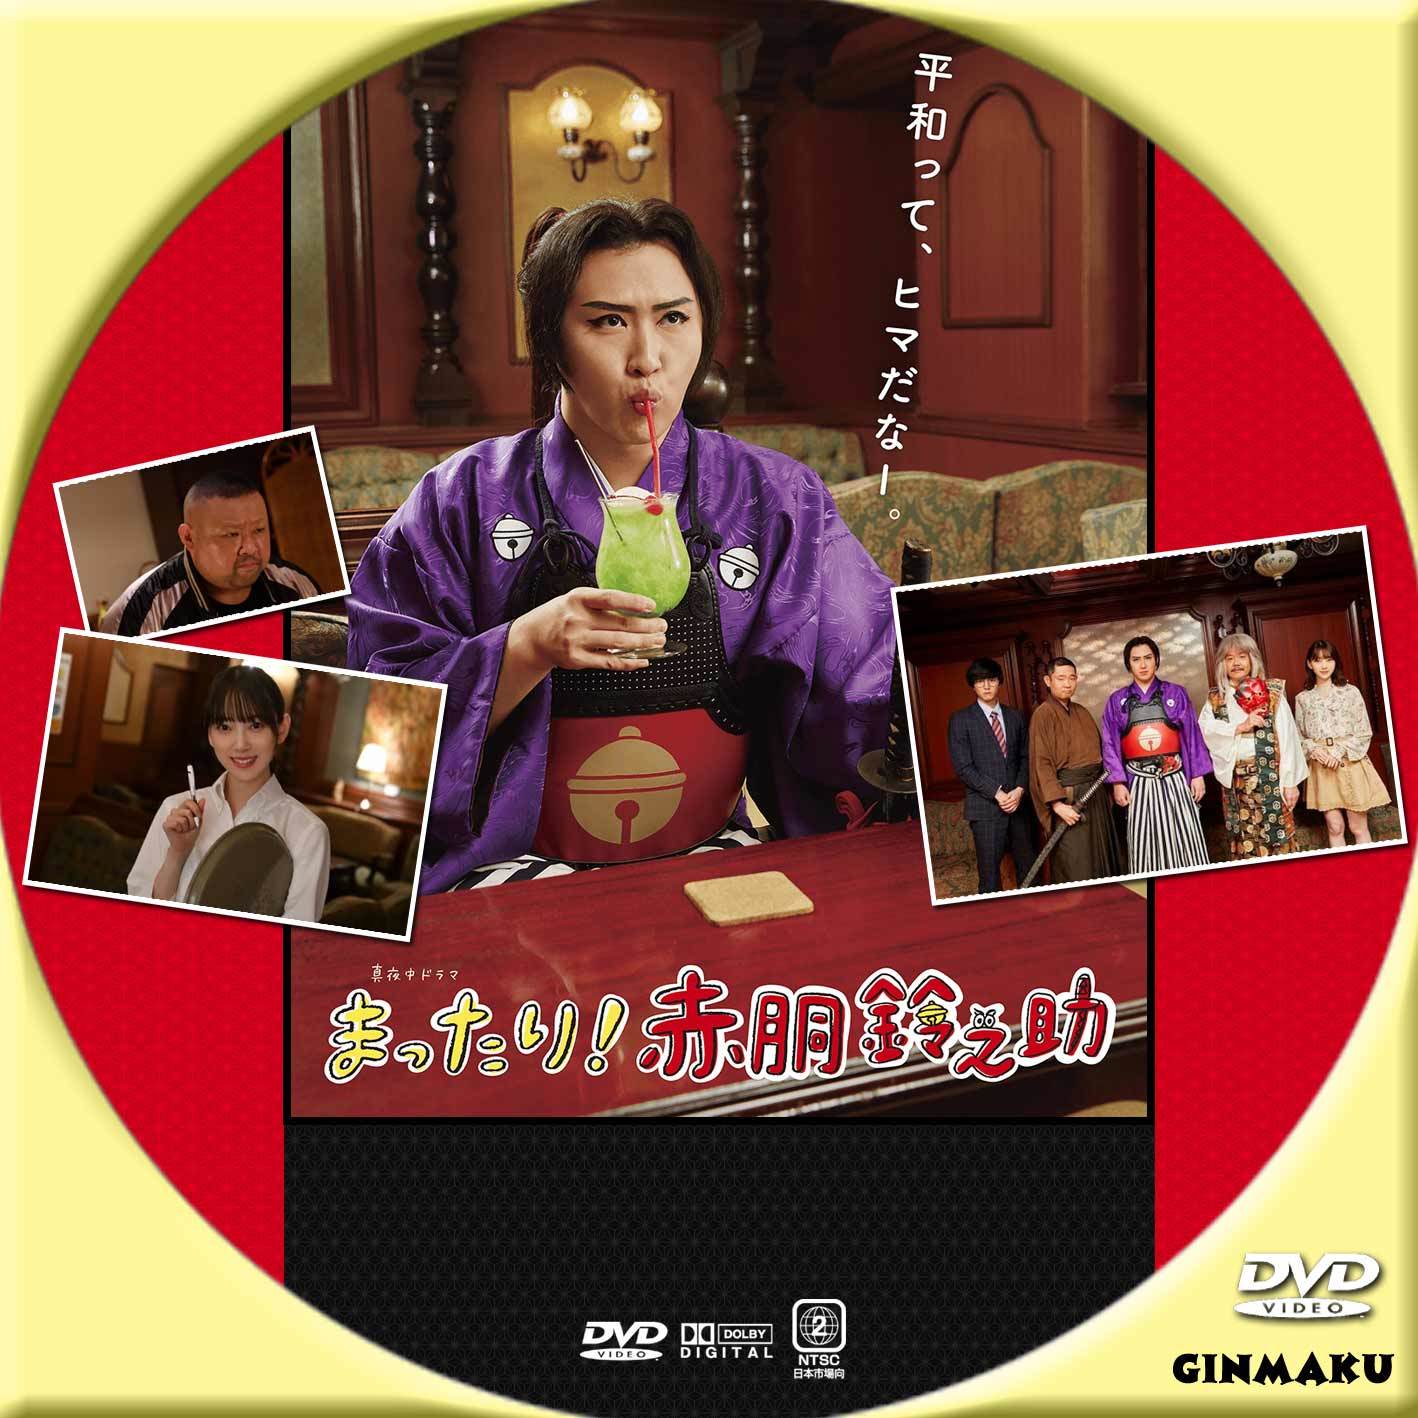 赤胴鈴之助 DVD BOX tf8su2k www.krzysztofbialy.com